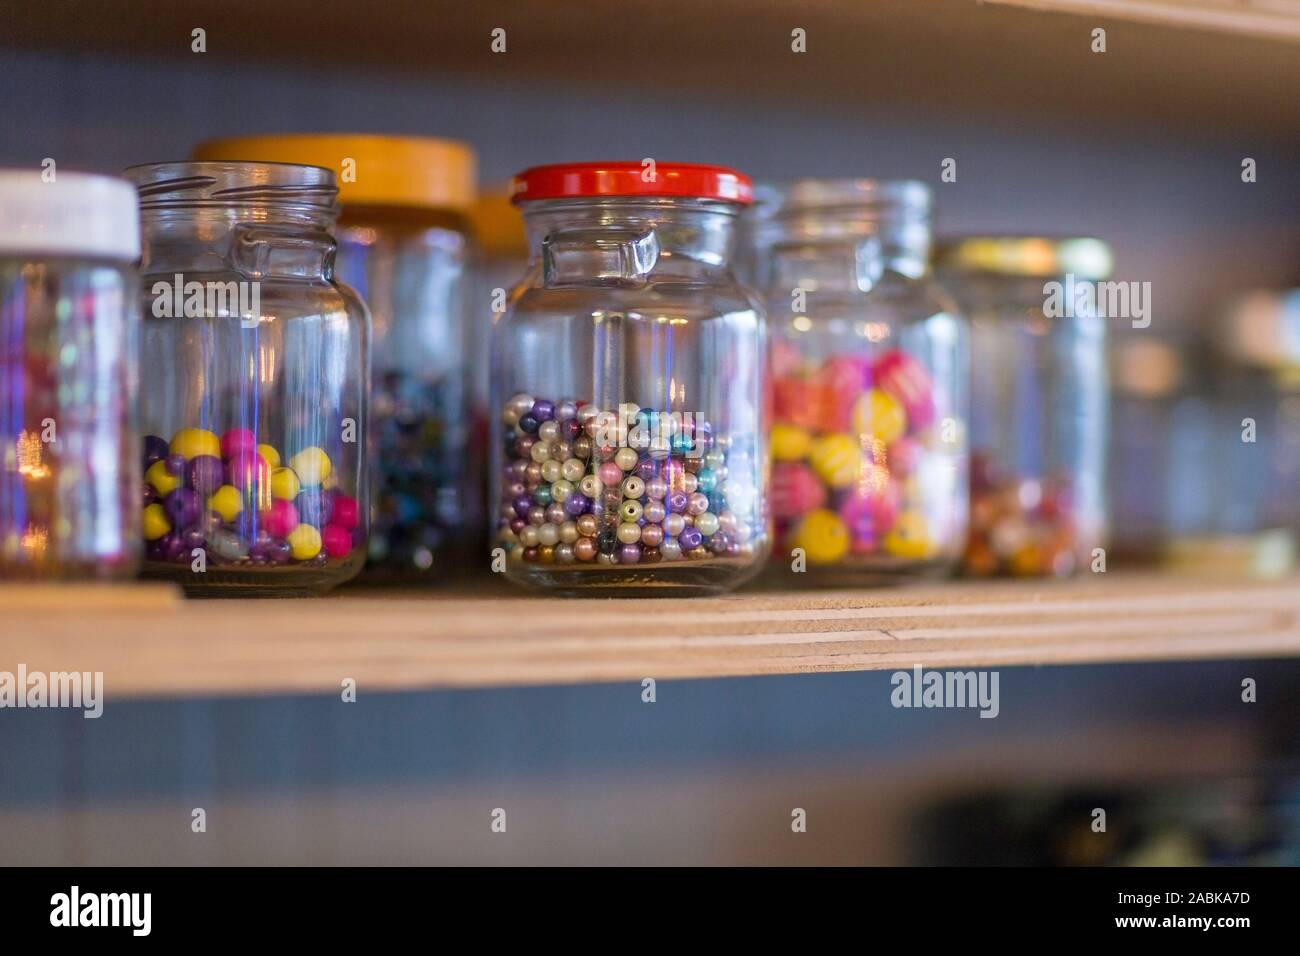 Un dettaglio di carta riciclata per vasi di vetro con diverse dimensioni di perline colorate al loro interno su un ripiano. Circolare principio di economia, il riciclaggio, il riutilizzo Foto Stock